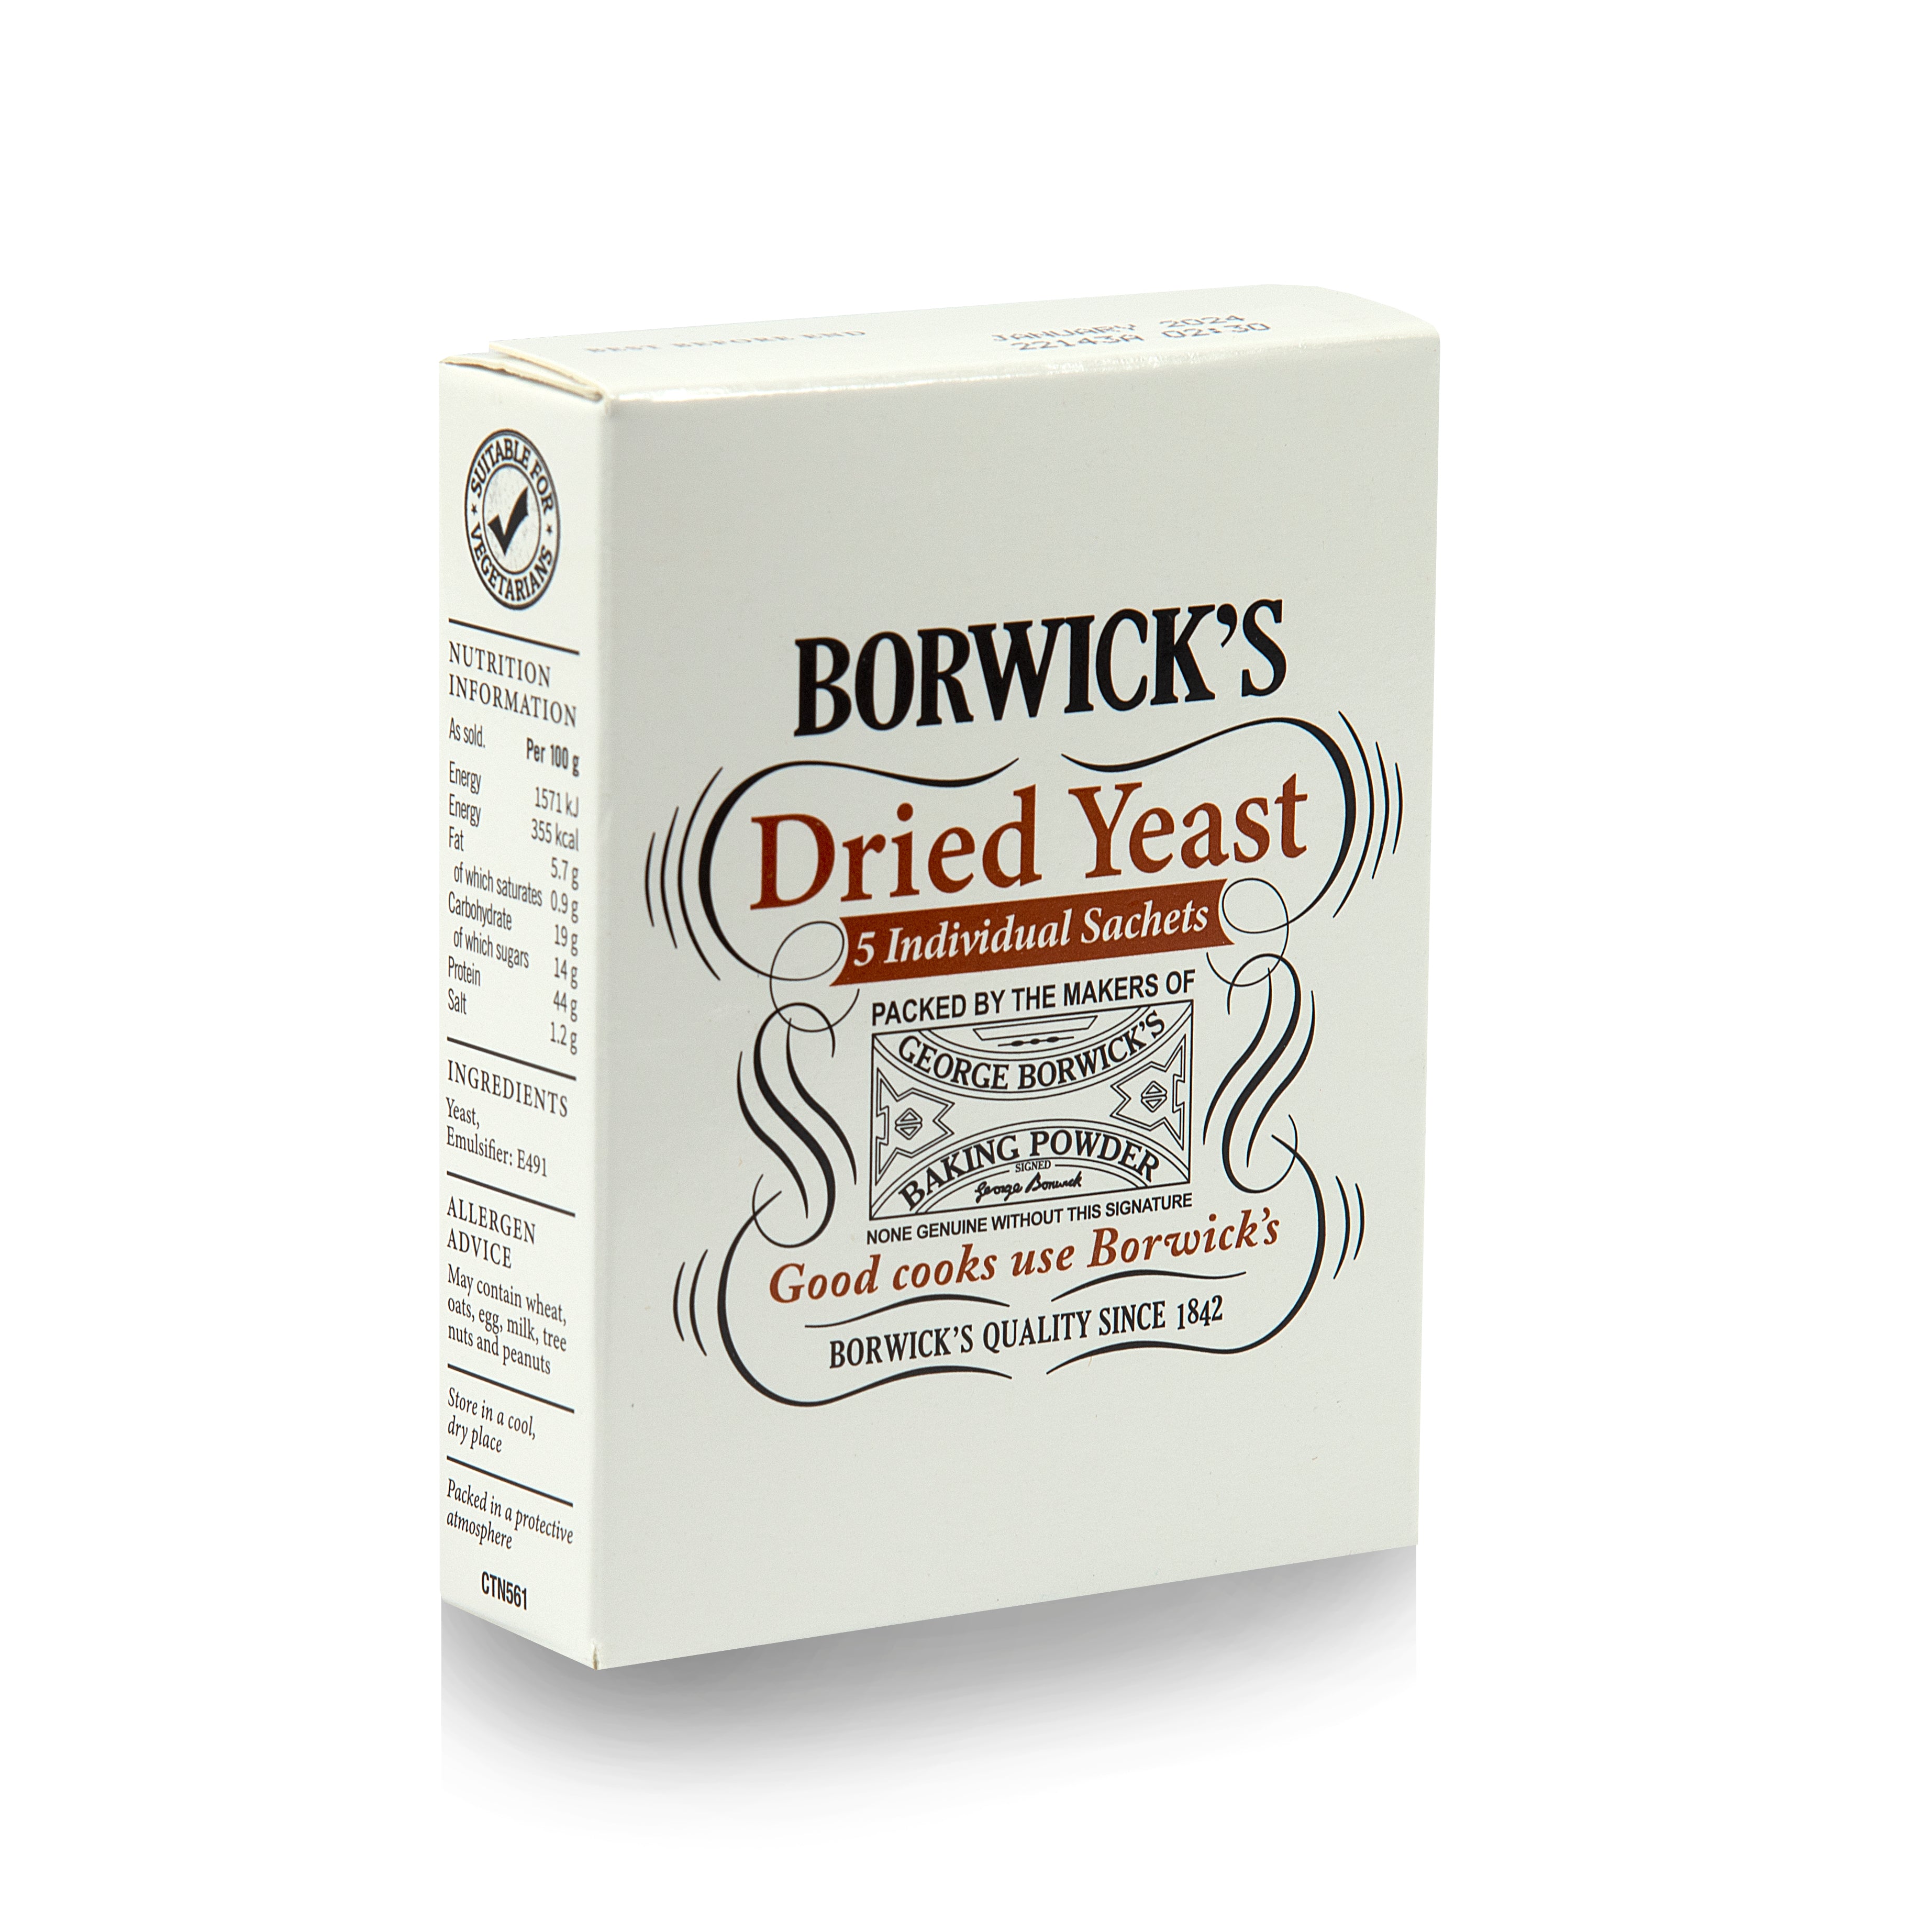 Borwick's Dried Yeast 30g - Pack of 6